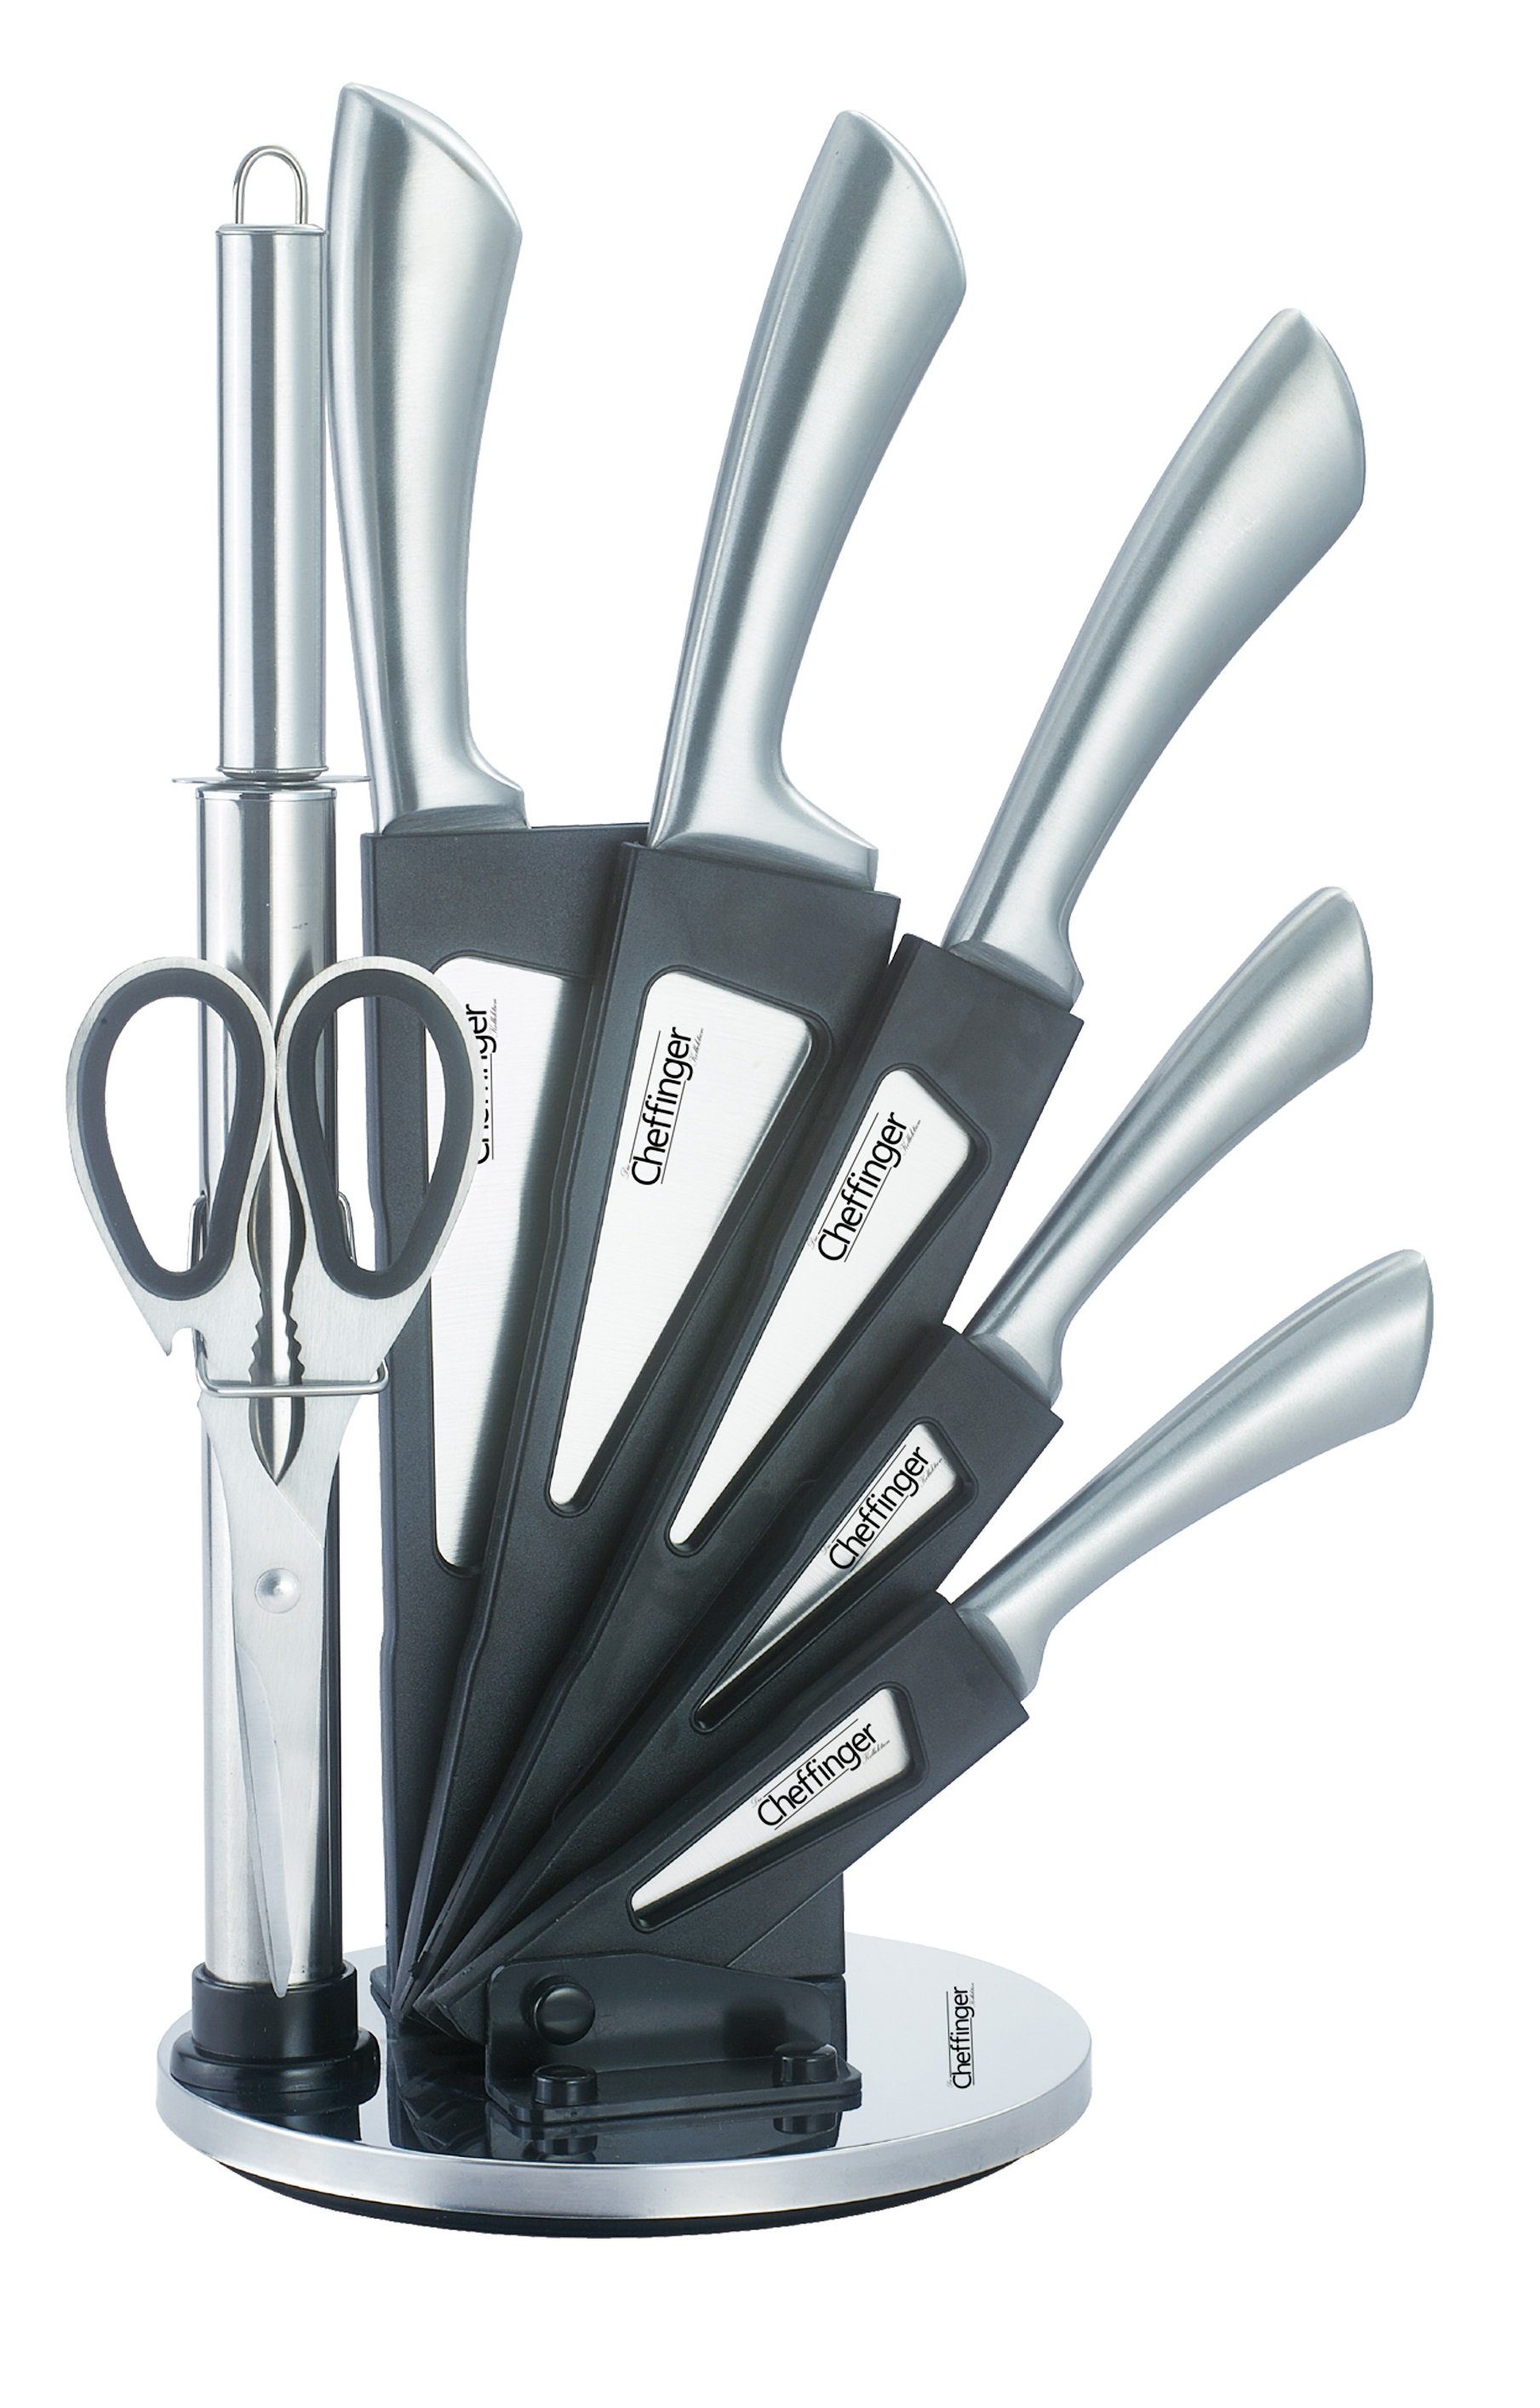 Cheffinger Messer-Set 8-teiliges Profi Messer-Set Messerblock sehr hochwertiges Selbstschärfen Messer Küchenmesser Set Kochmesser Edelstahl Silber